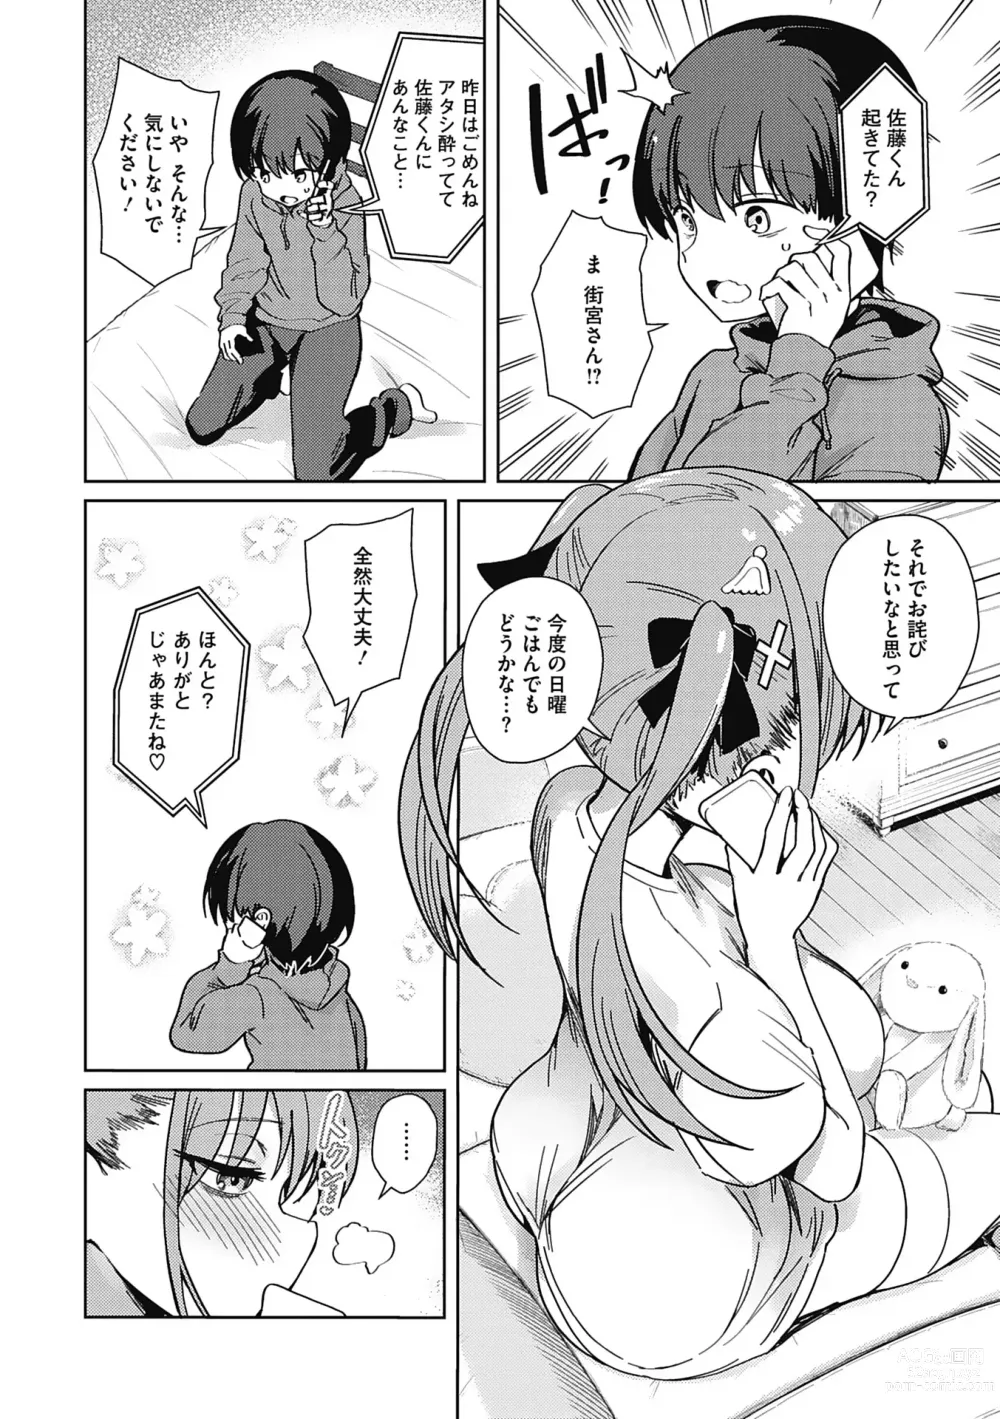 Page 10 of manga Kegasaretai-kei Kanojo.